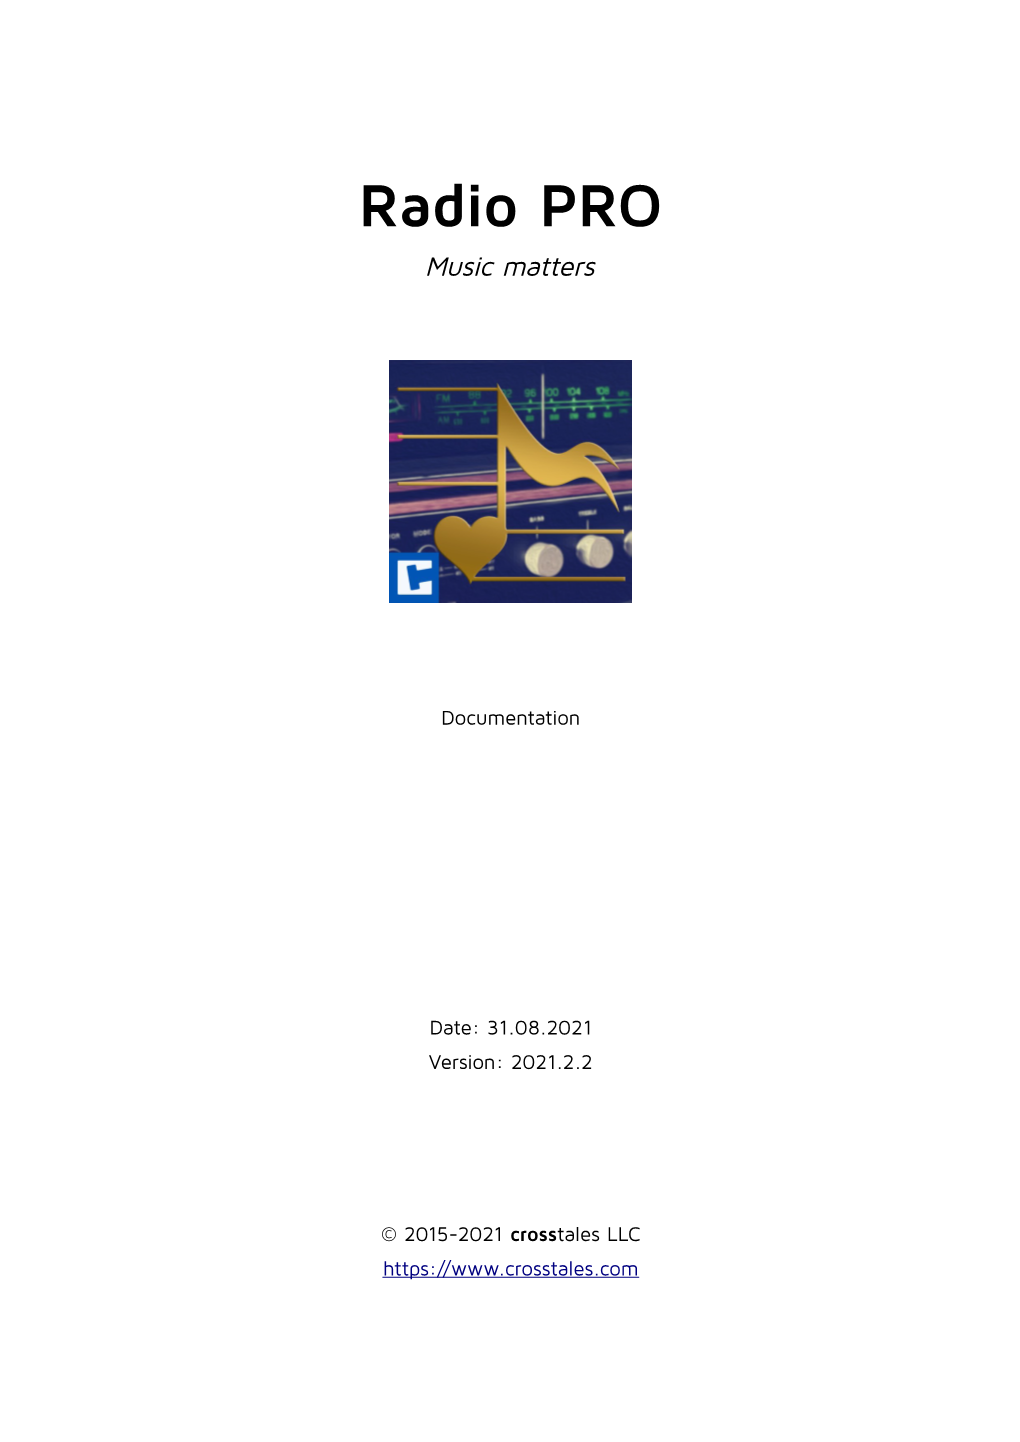 Radio PRO Music Matters